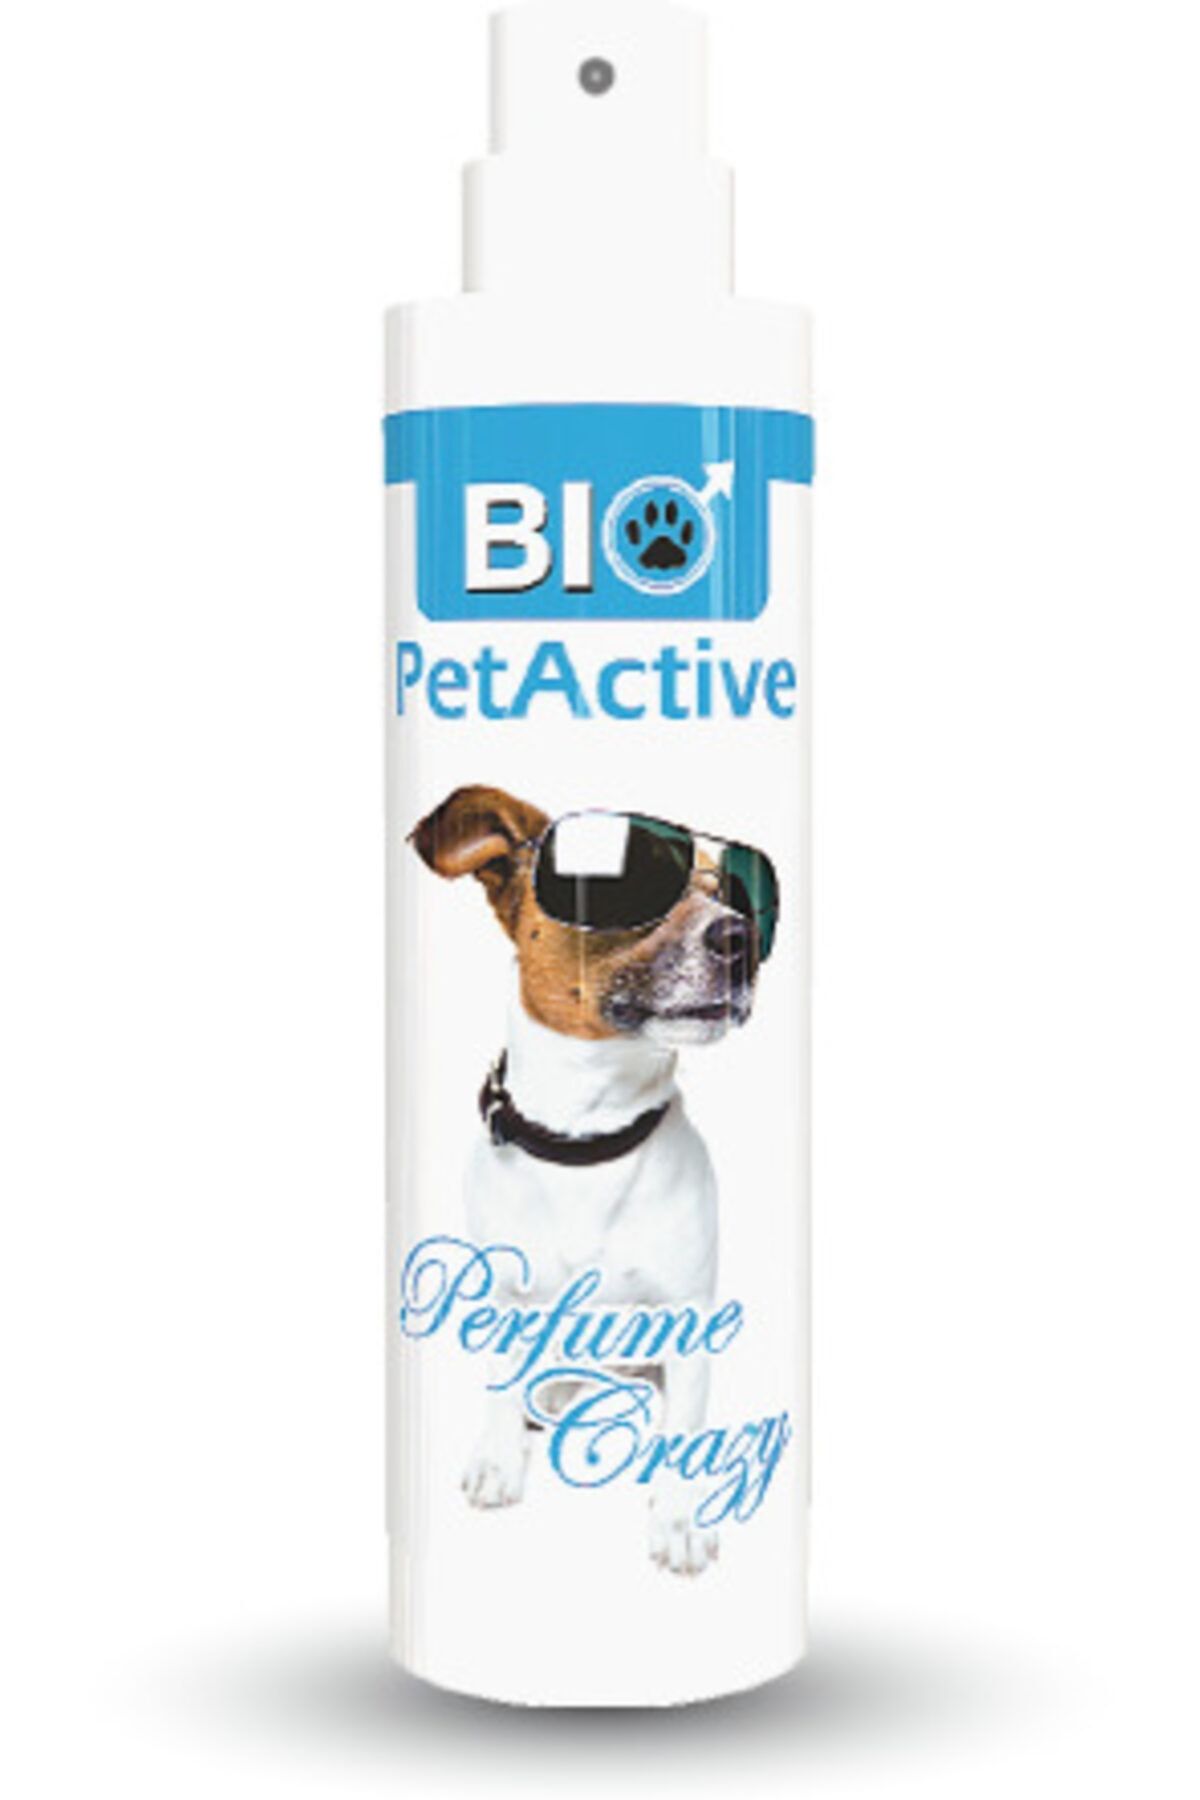 Bio PetActive Perfume Crazy| Kedi Ve Köpekler Için Parfüm 50 Ml.